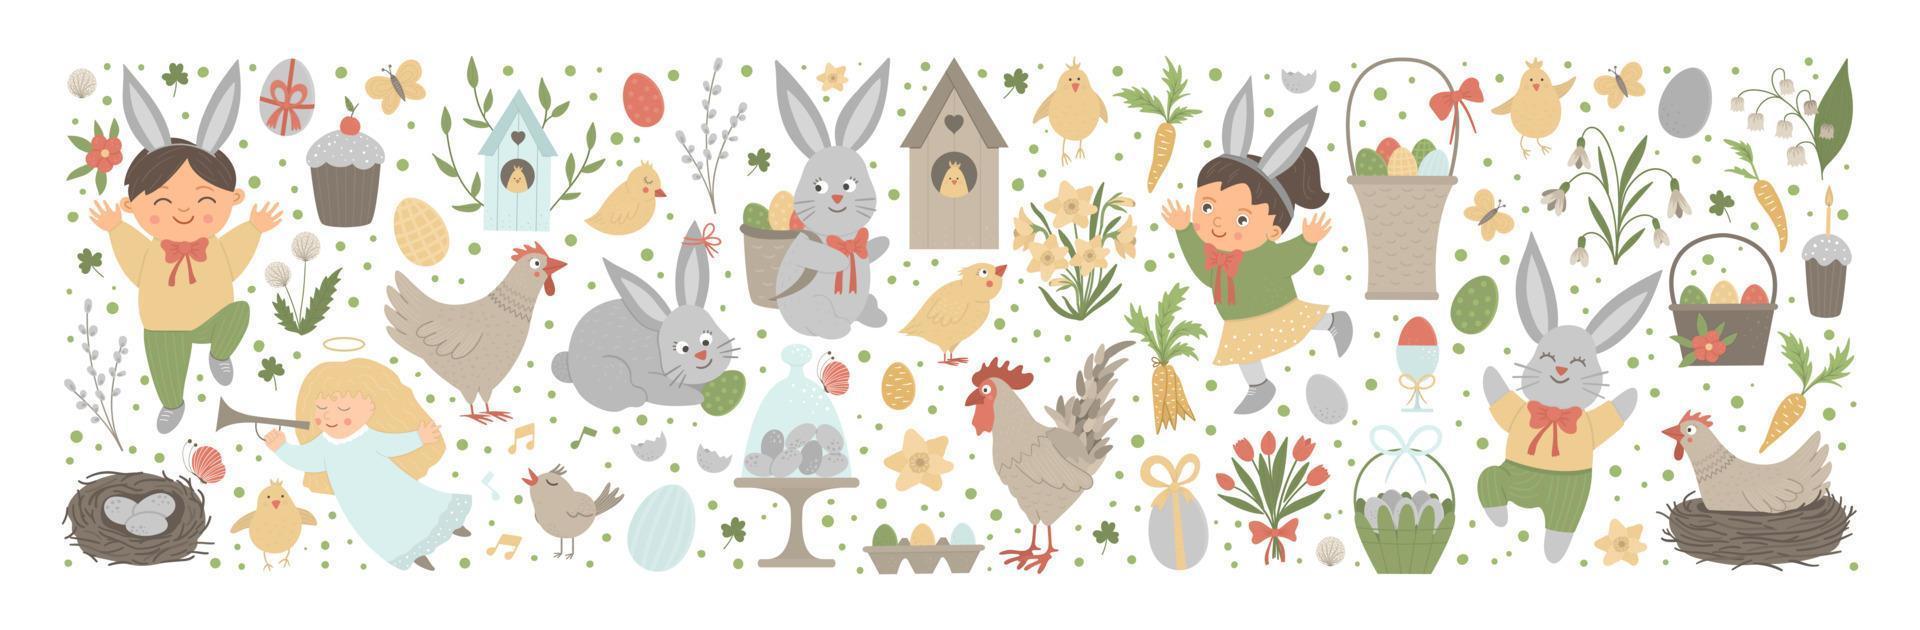 vektor påsk horisontell layoutuppsättning med kanin, ägg och glada barn isolerad på vit bakgrund. kristen semester tema banner eller inbjudan. söt rolig våren bakgrund.